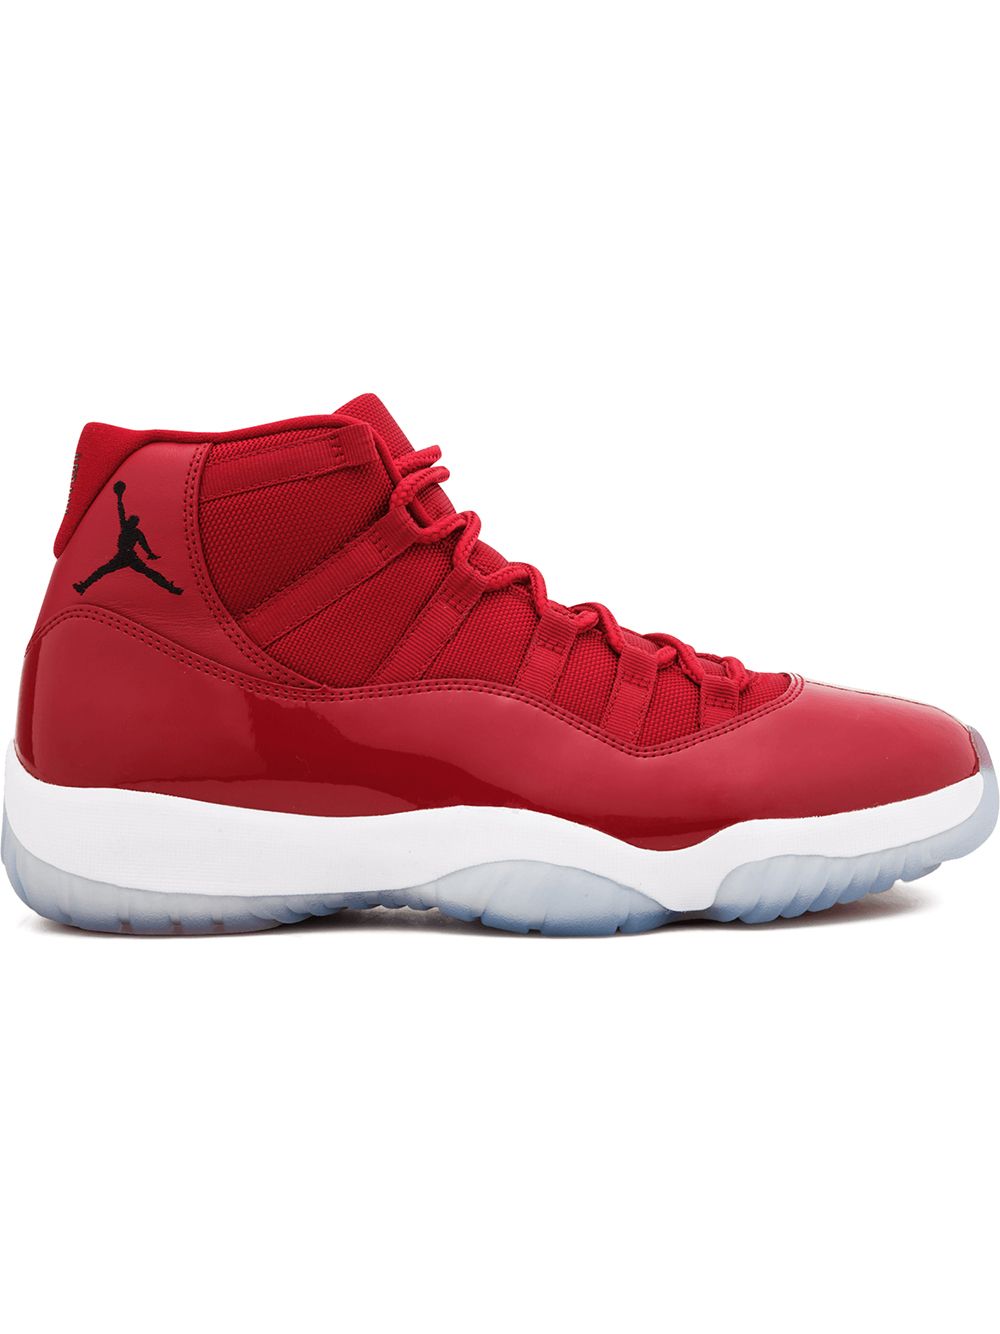 Jordan Air Jordan 11 Retro "Win Like 96" sneakers - Red